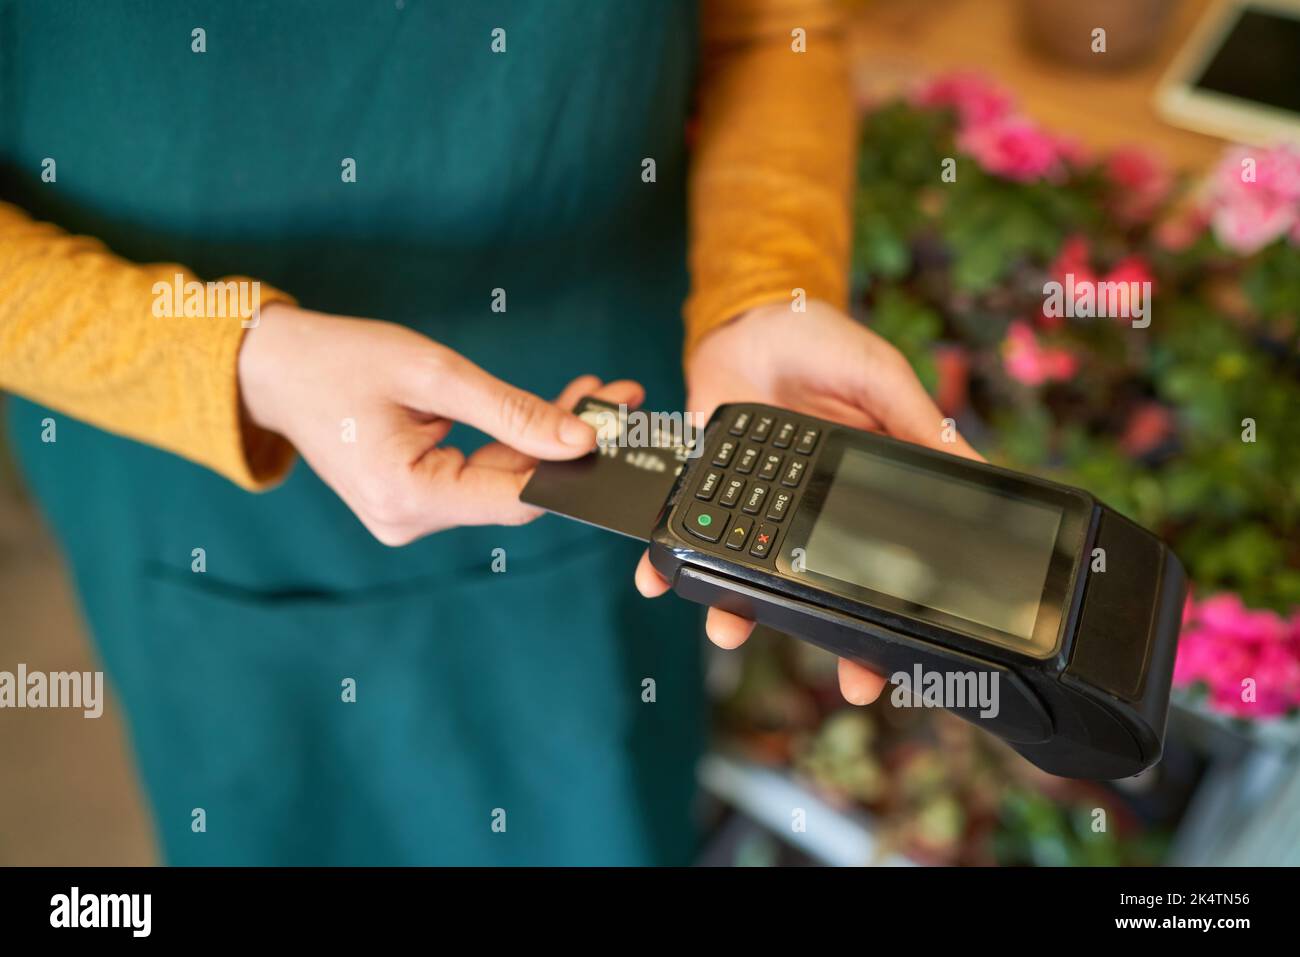 La main tient la carte de crédit au lecteur pendant le paiement mobile dans la vente au détail dans la boutique de fleurs Banque D'Images